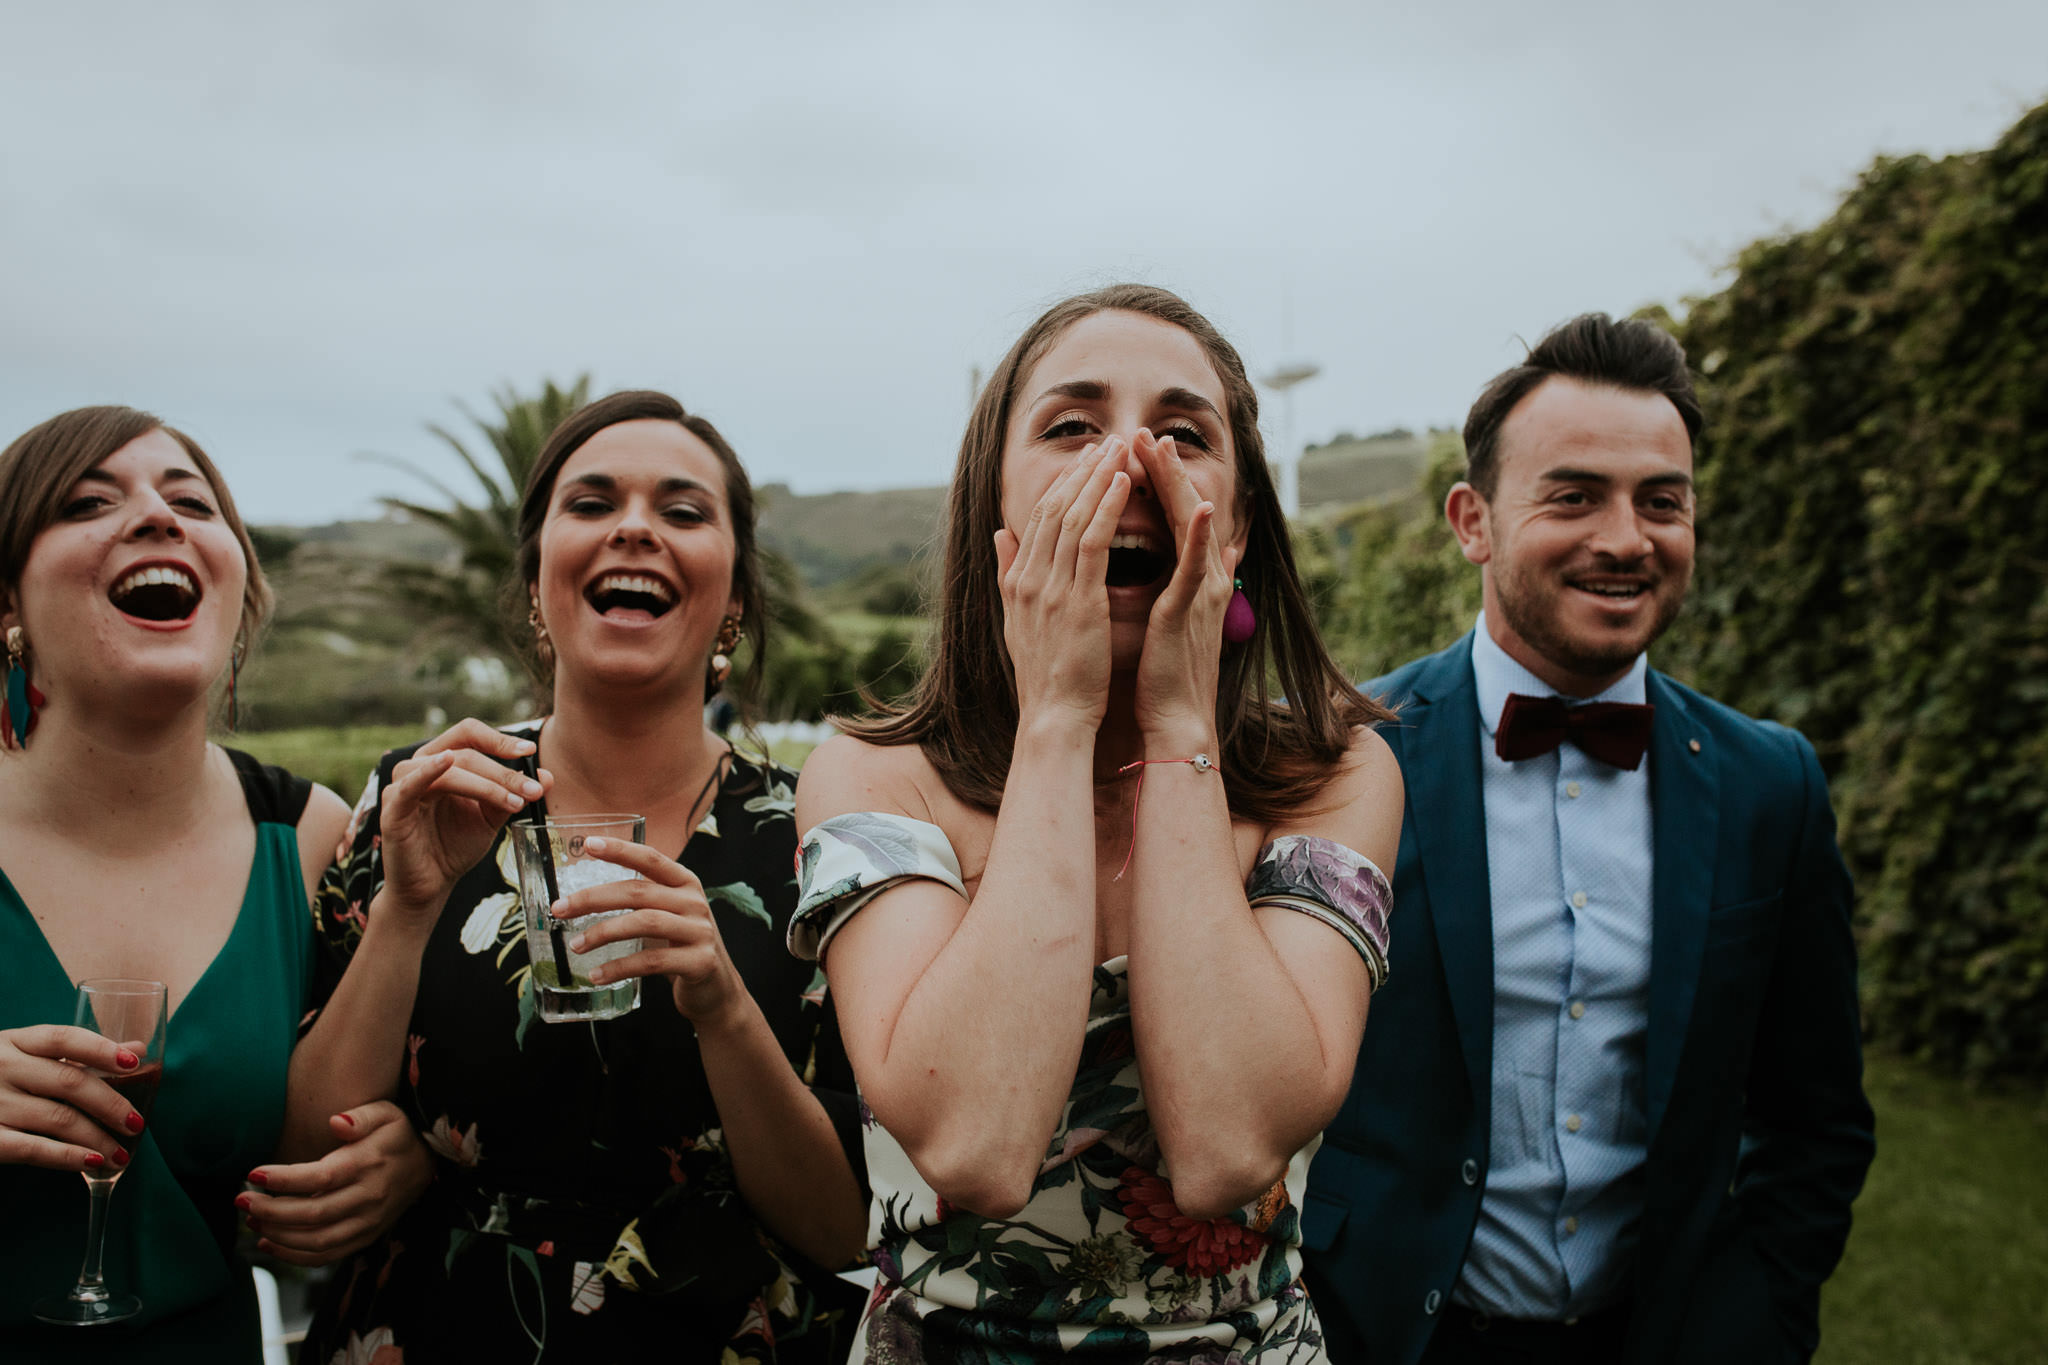 fotografos de boda asturias